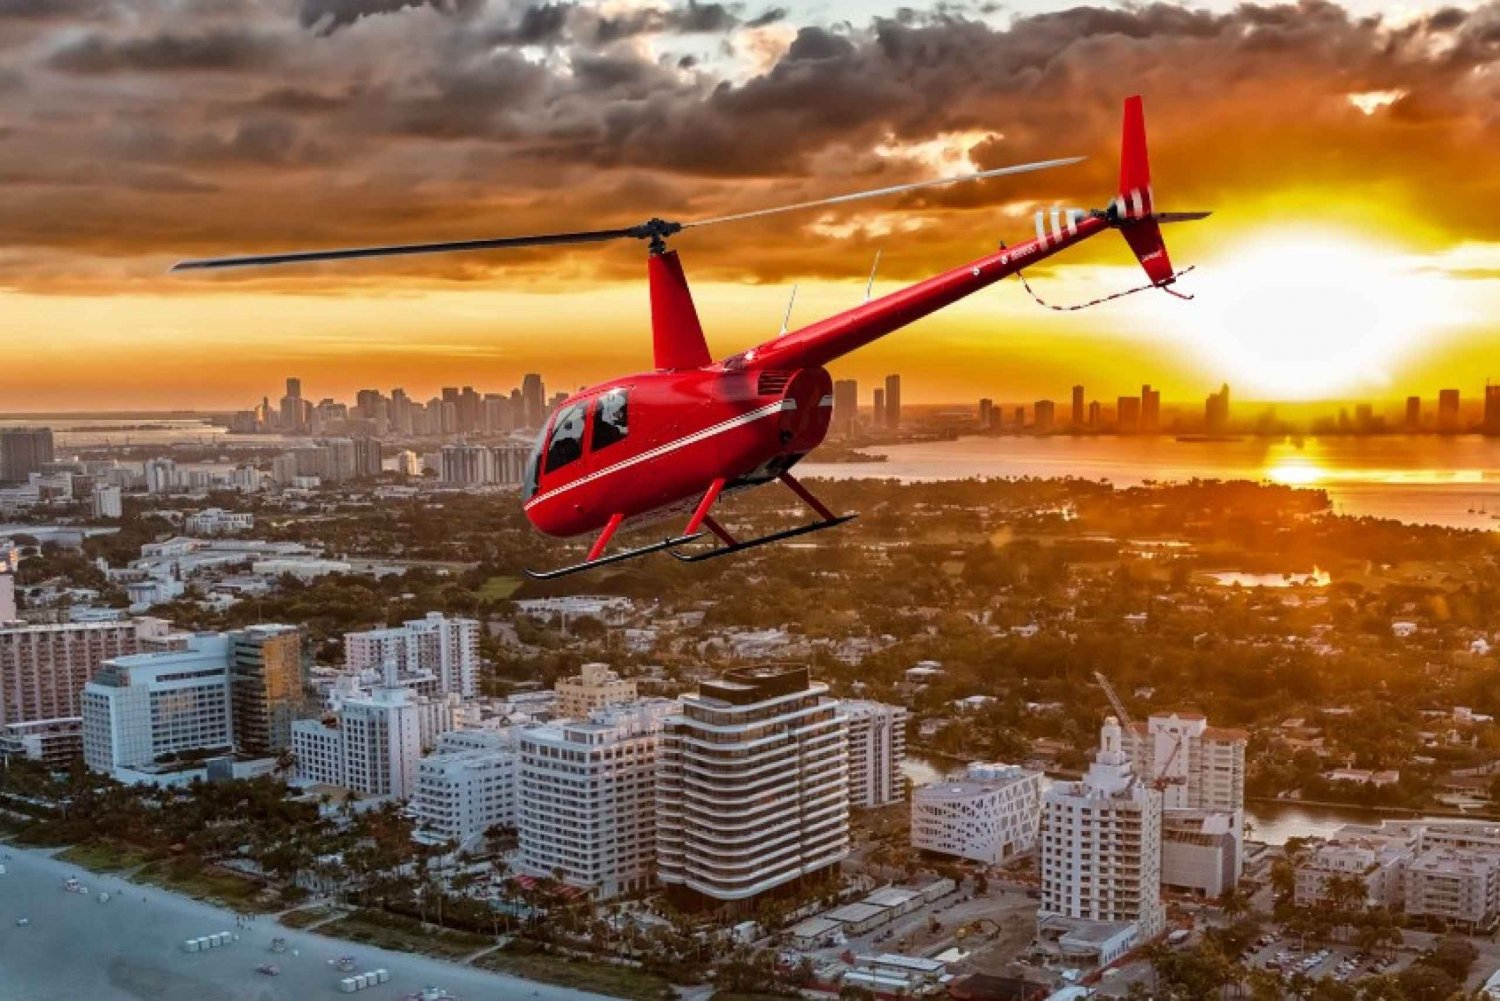 Miami Beach: 30-minuten privévlucht met luxe helikopter bij zonsondergang